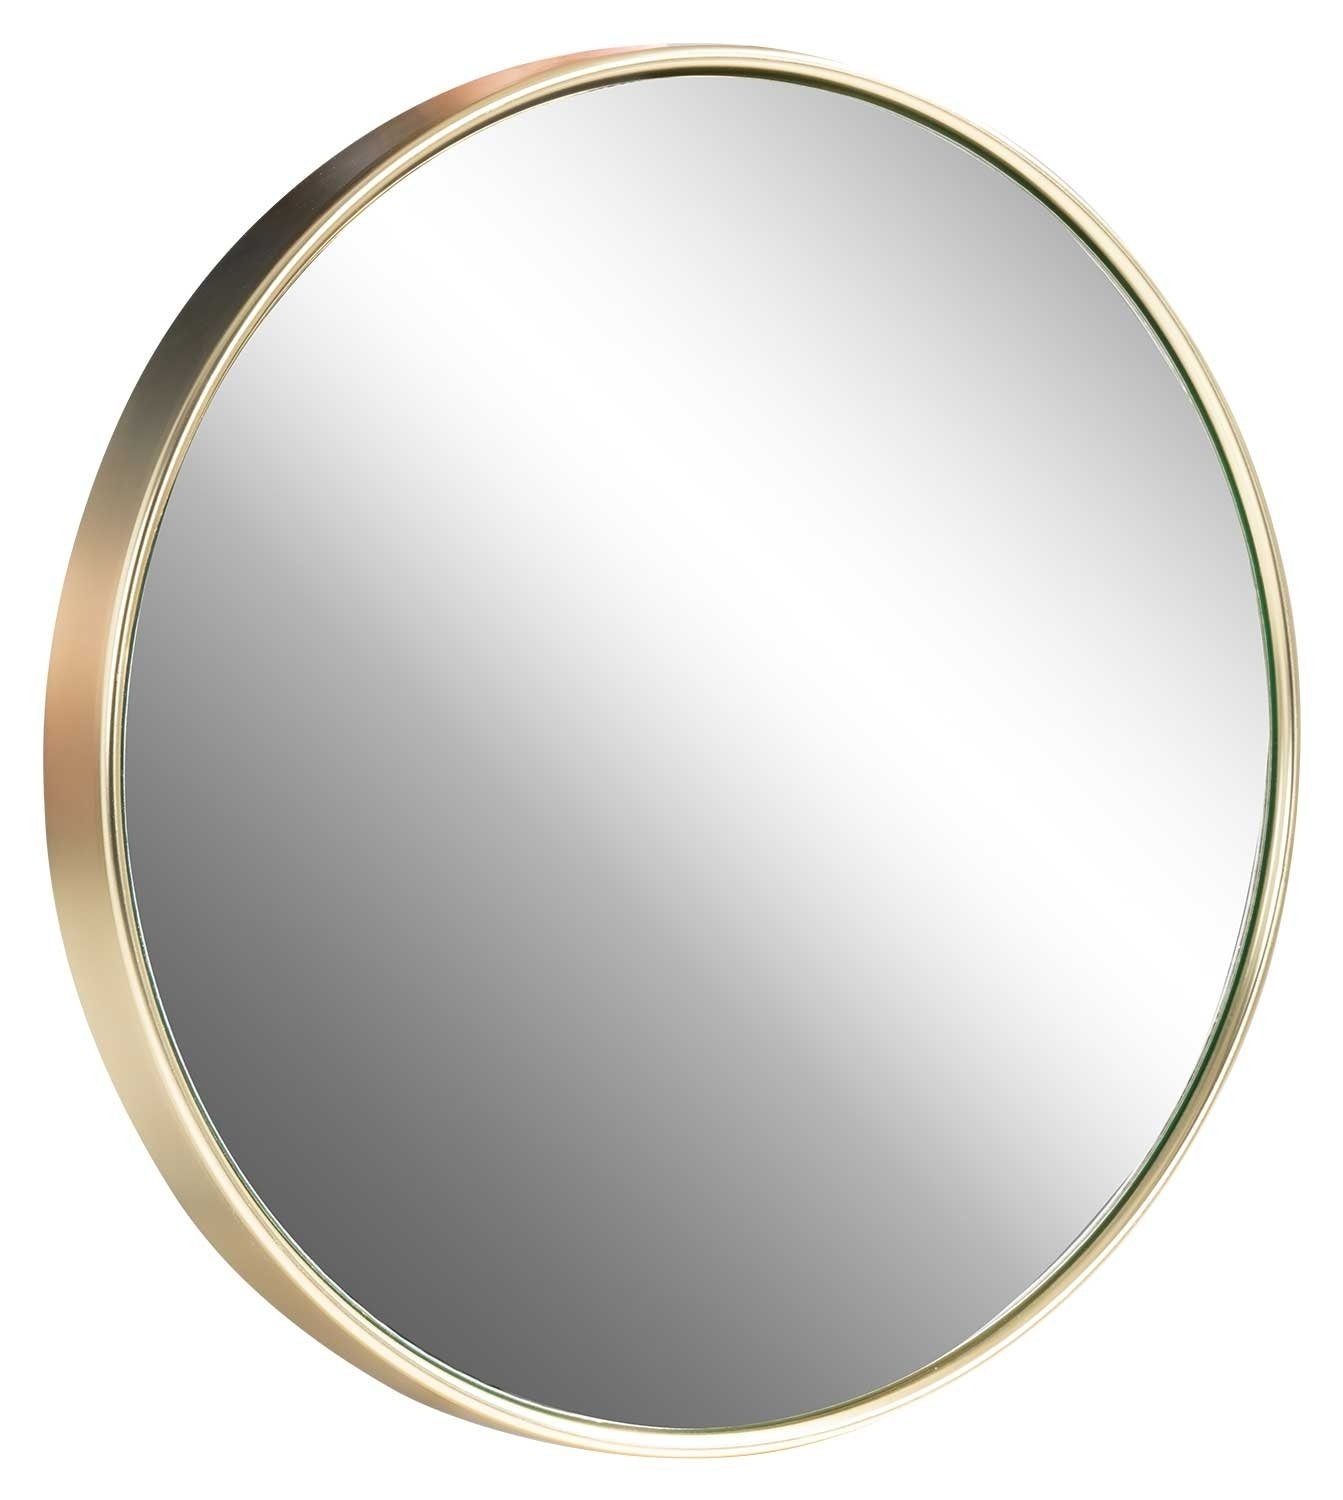 Home4You Spiegel TAINA, Ø 40 cm, Rahmen in Goldfarben, Metall, lackierte Rahmenoberfläche | Spiegel